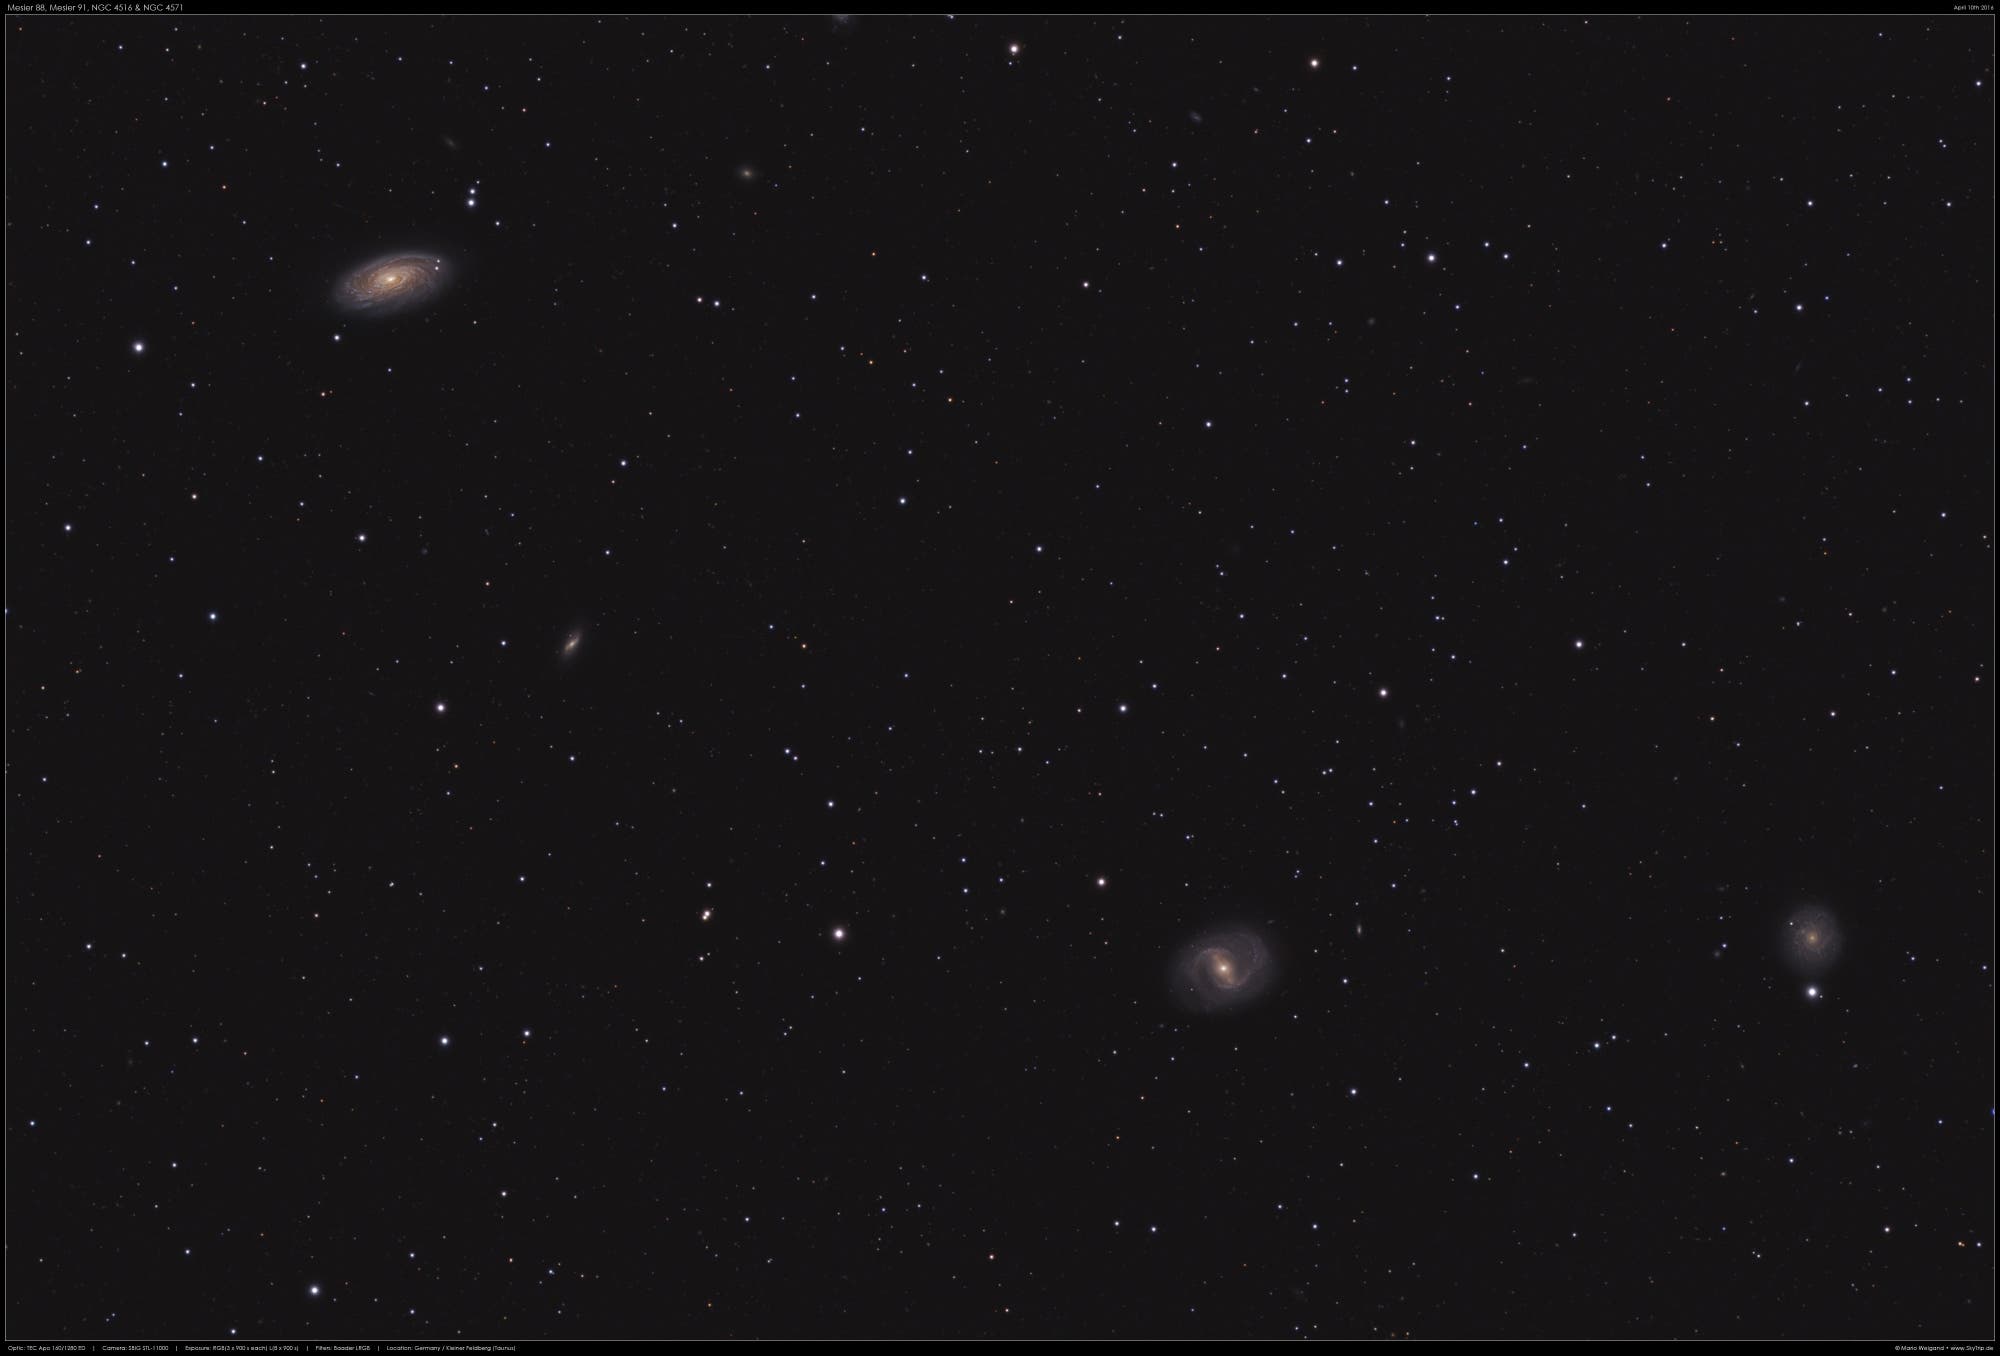 Virgohaufen mit Messier 88, Messier 91 und NGC 4571